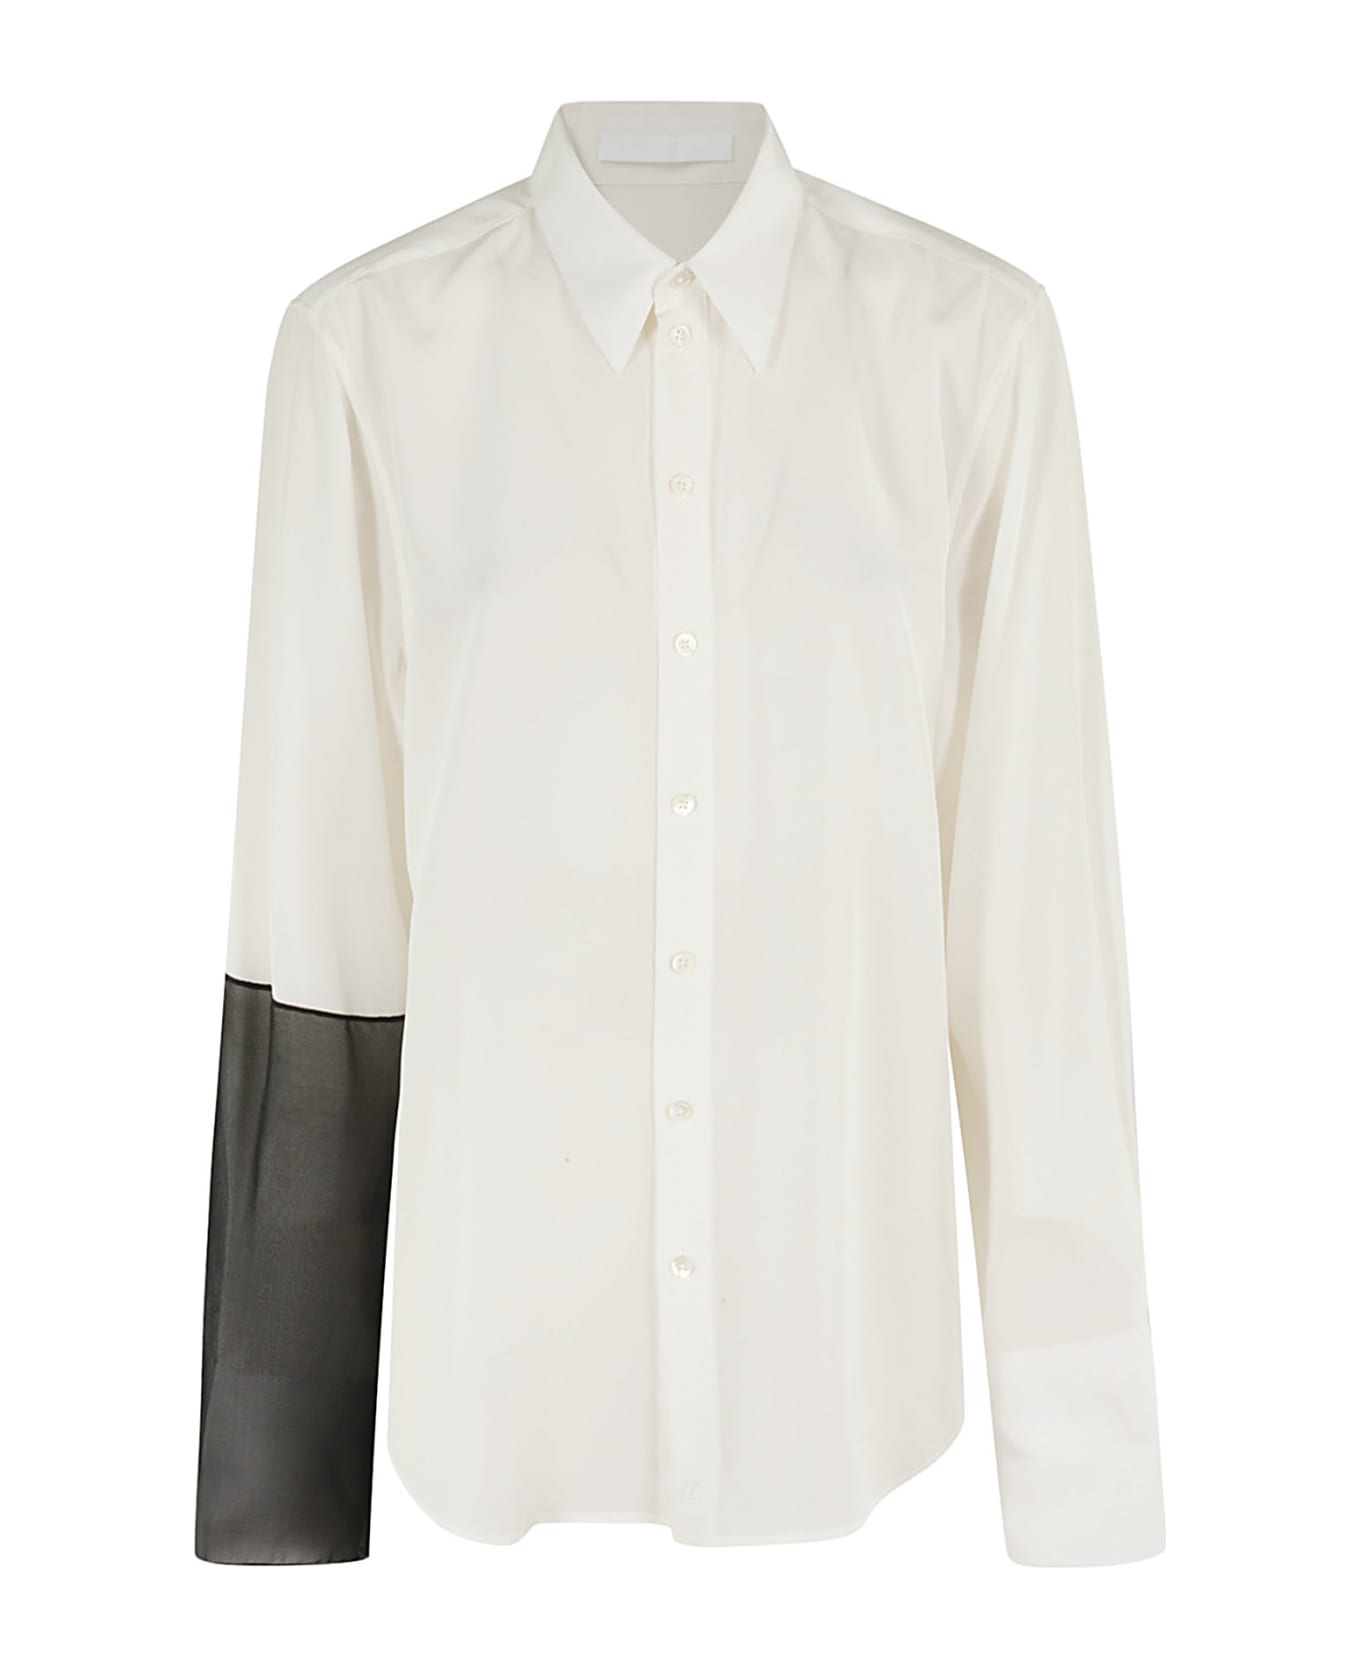 Helmut Lang Cb Relaxed Shirt - White Black